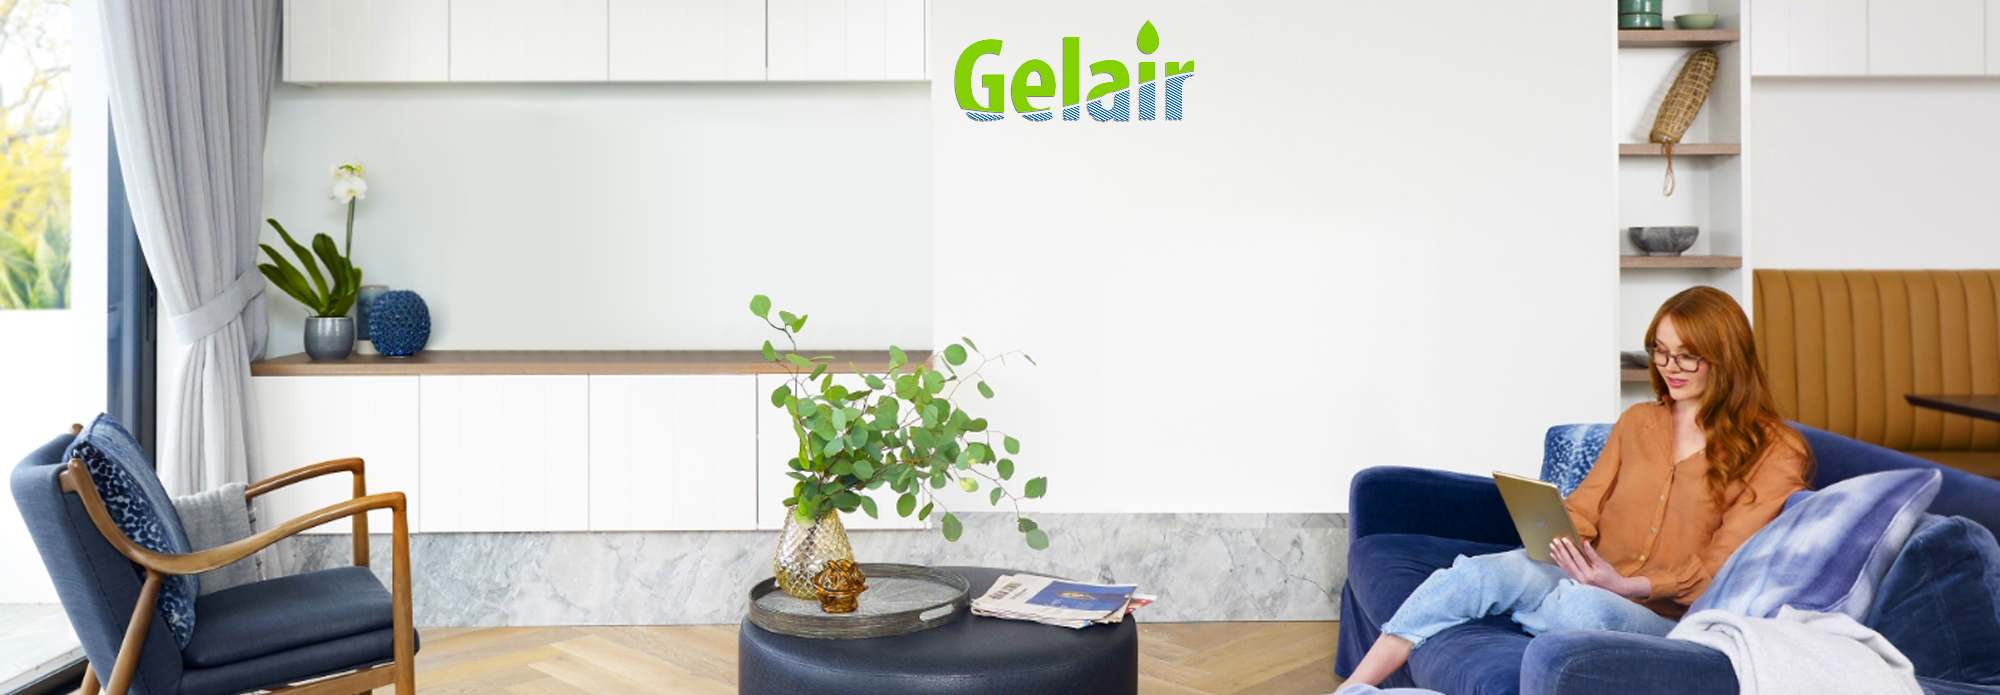 Gelair_Indoor Air Quality